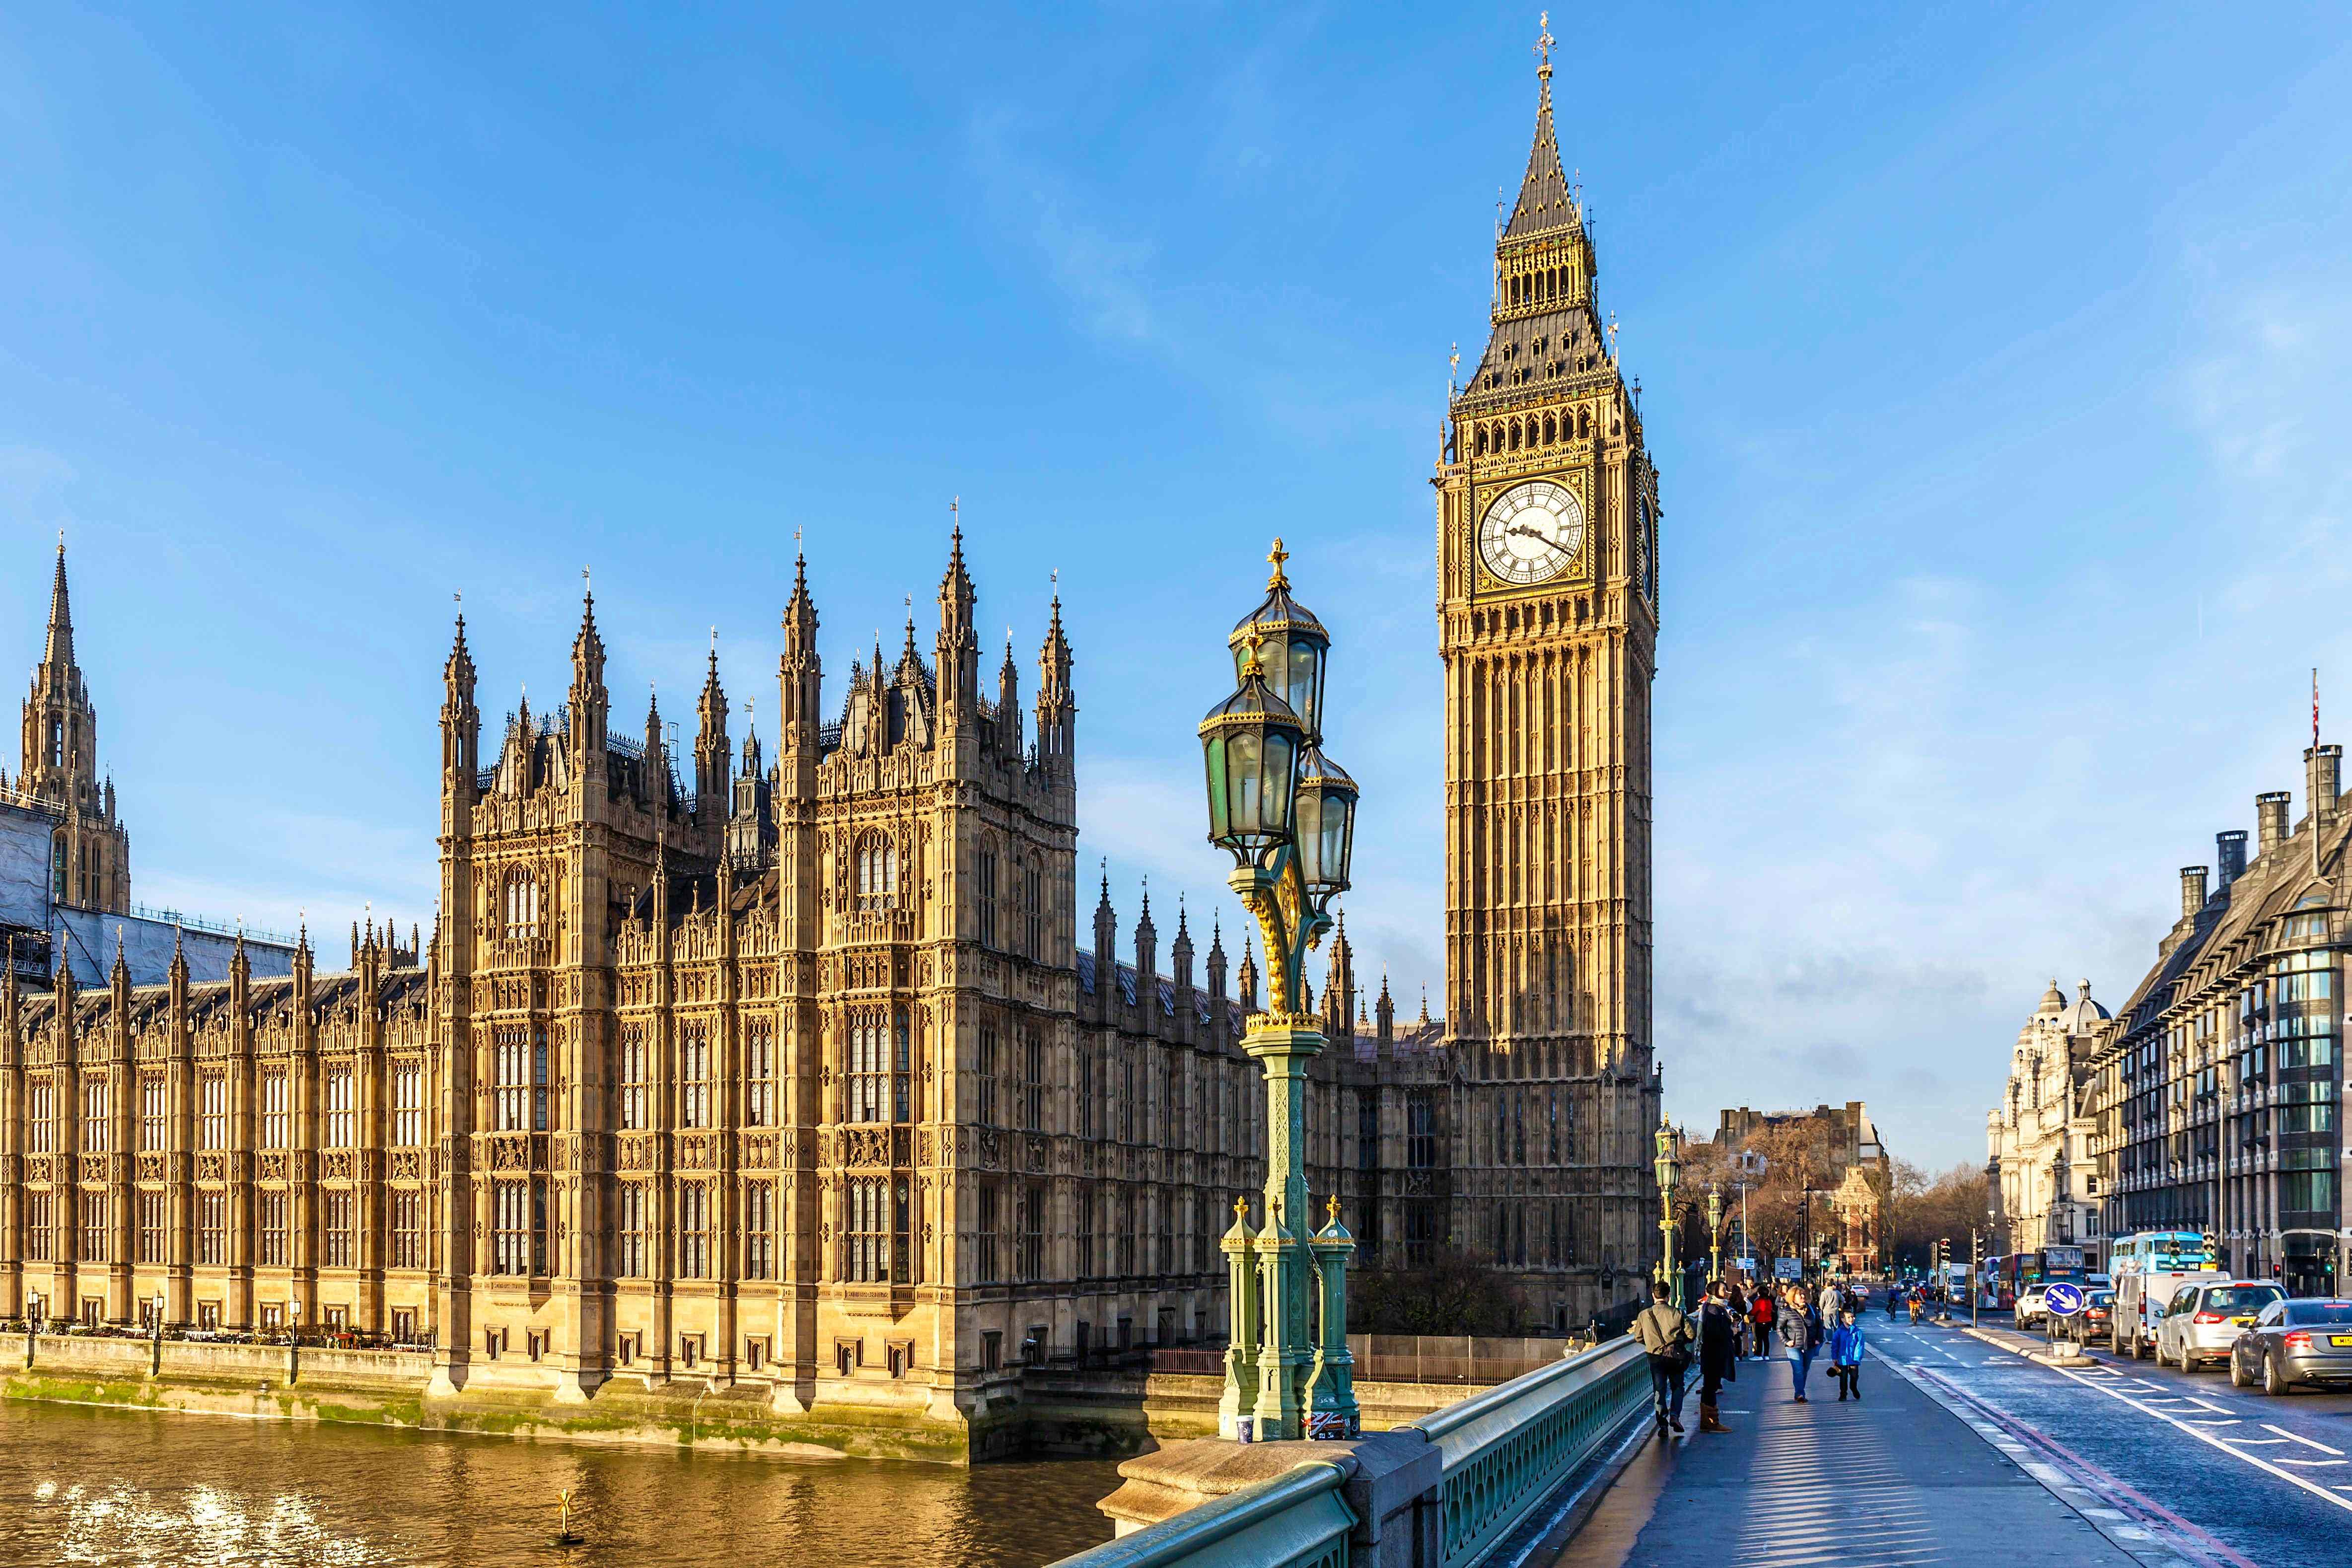 大本钟,这座雄伟的钟楼,不仅是伦敦的标志之一,更是英国历史的象征